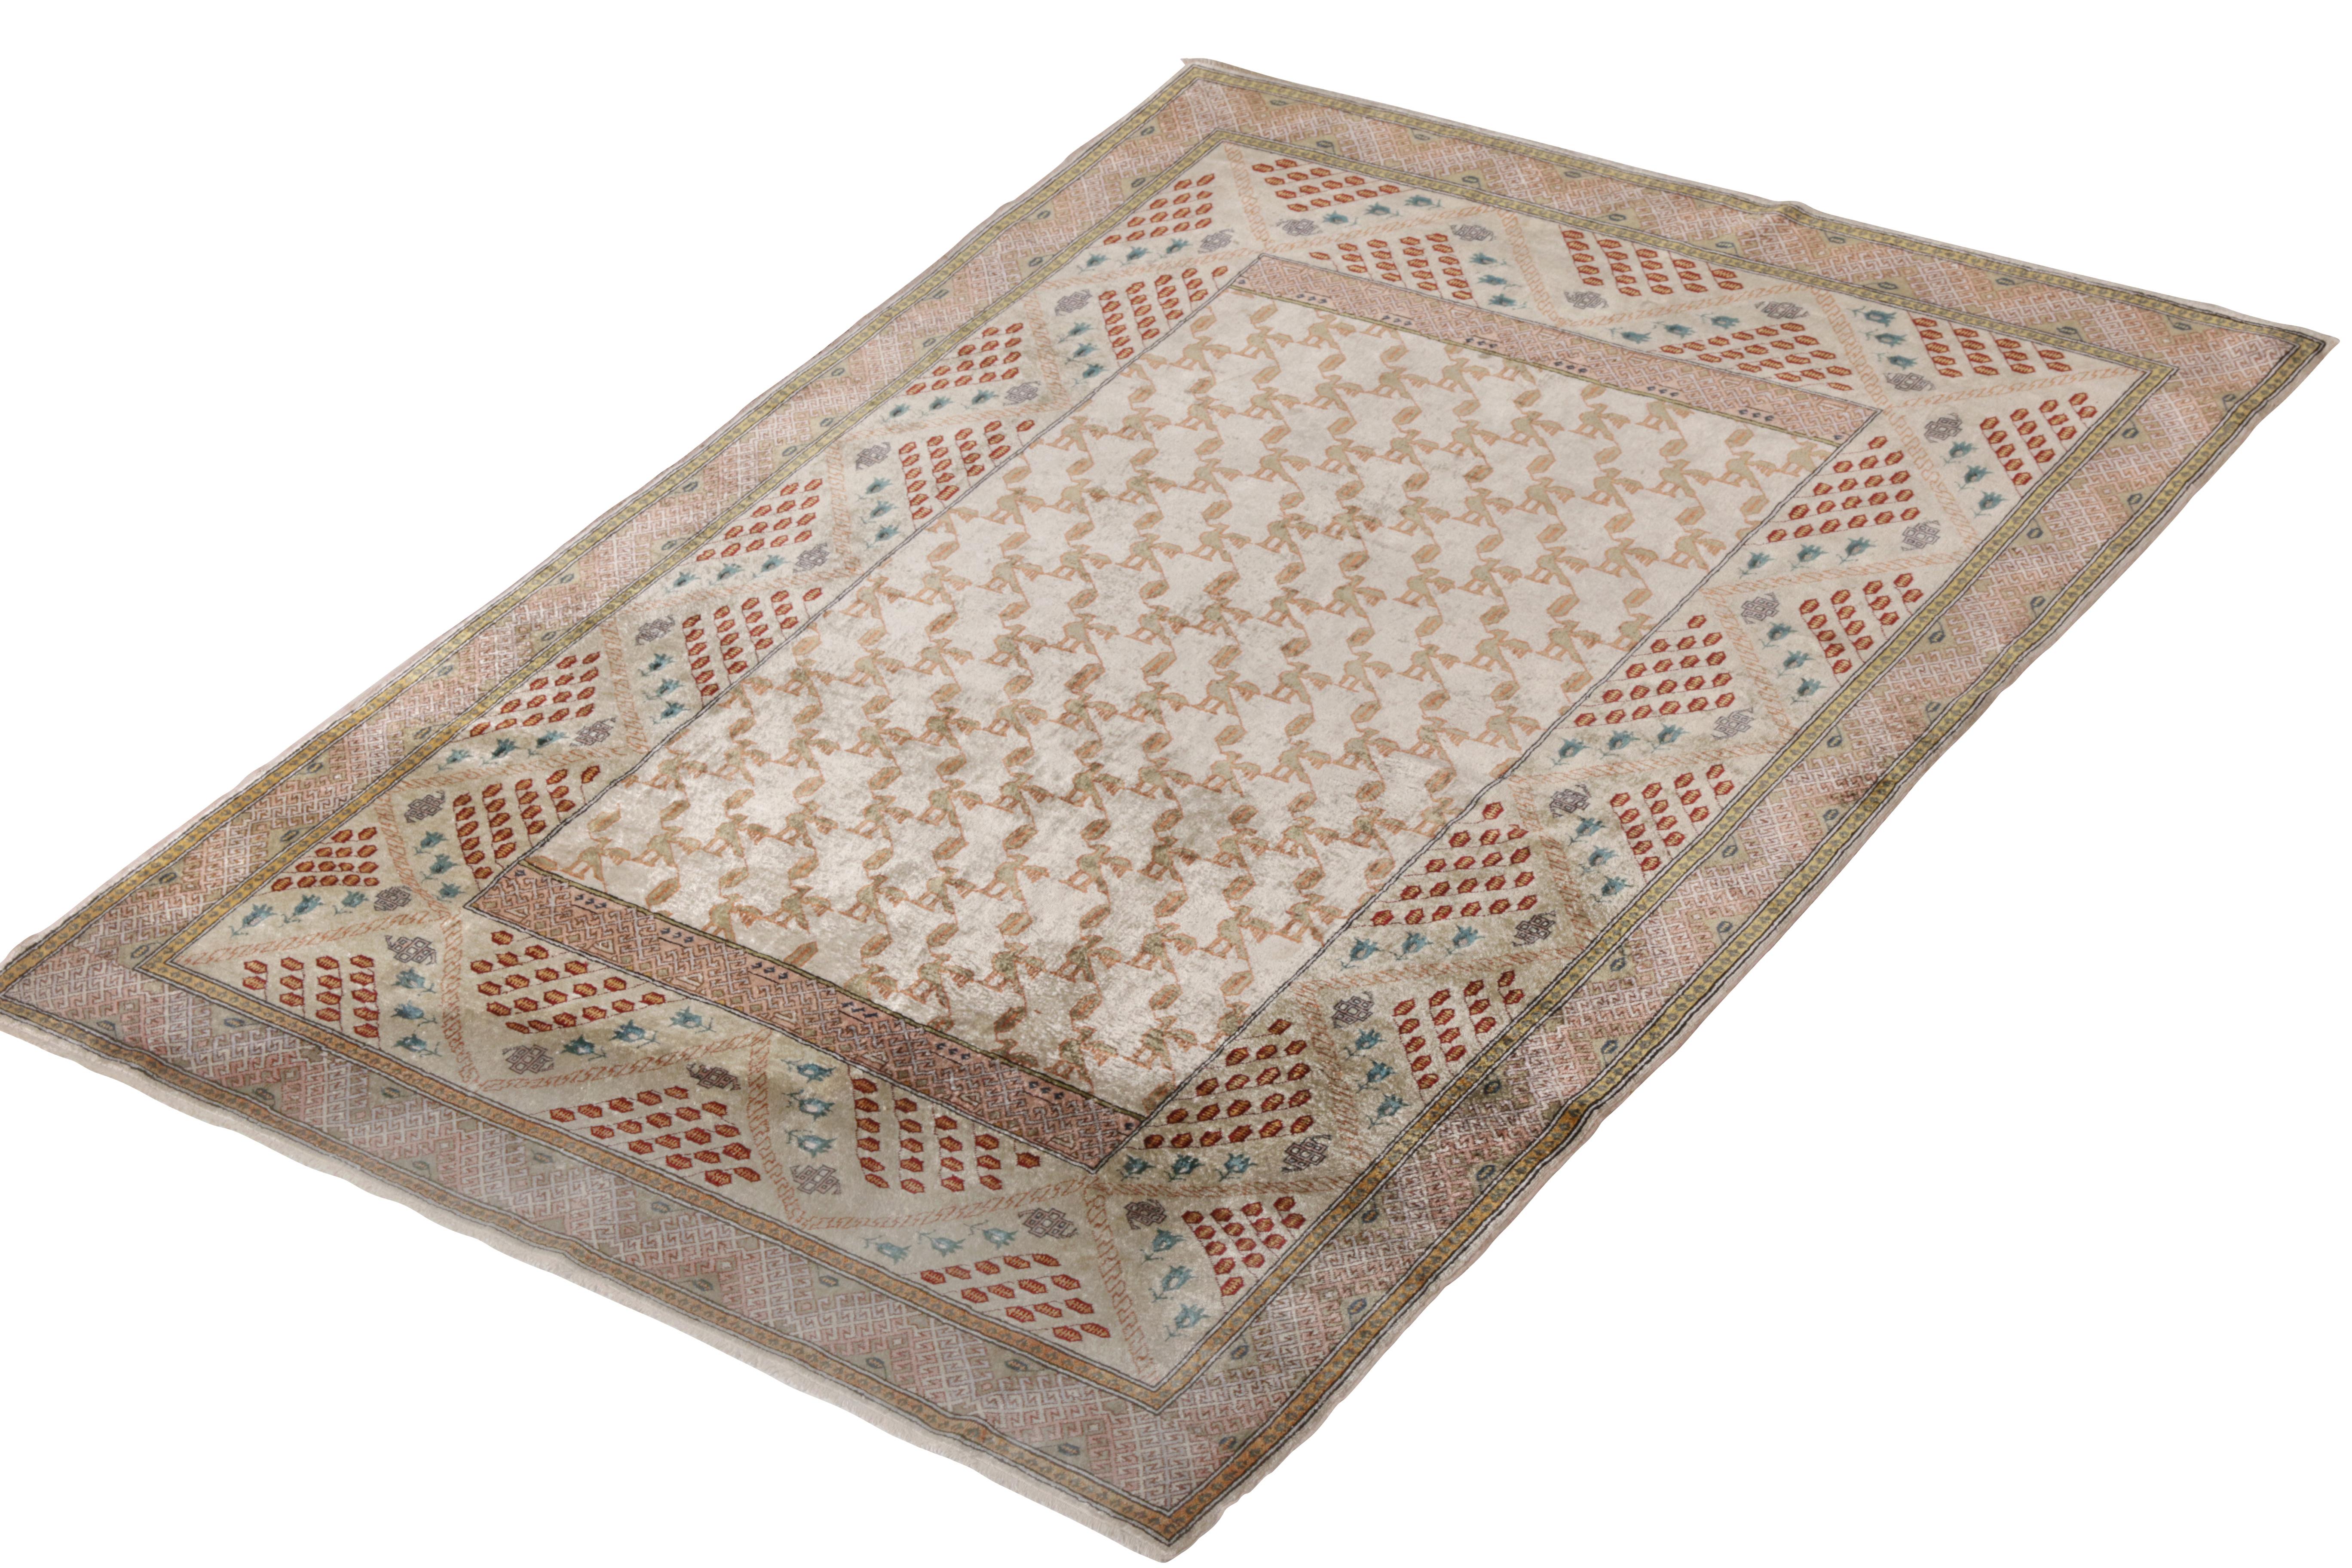 Ein spektakulärer antiker 4x6 Hereke-Teppich aus handgeknüpfter Seide und Metallgarnen, der um 1910-1920 in der Türkei entstand. Ein dezenter rosa Akzent auf beige-braunen Farbtönen ergänzt eine einzigartige Reihe von geometrischen und malerischen